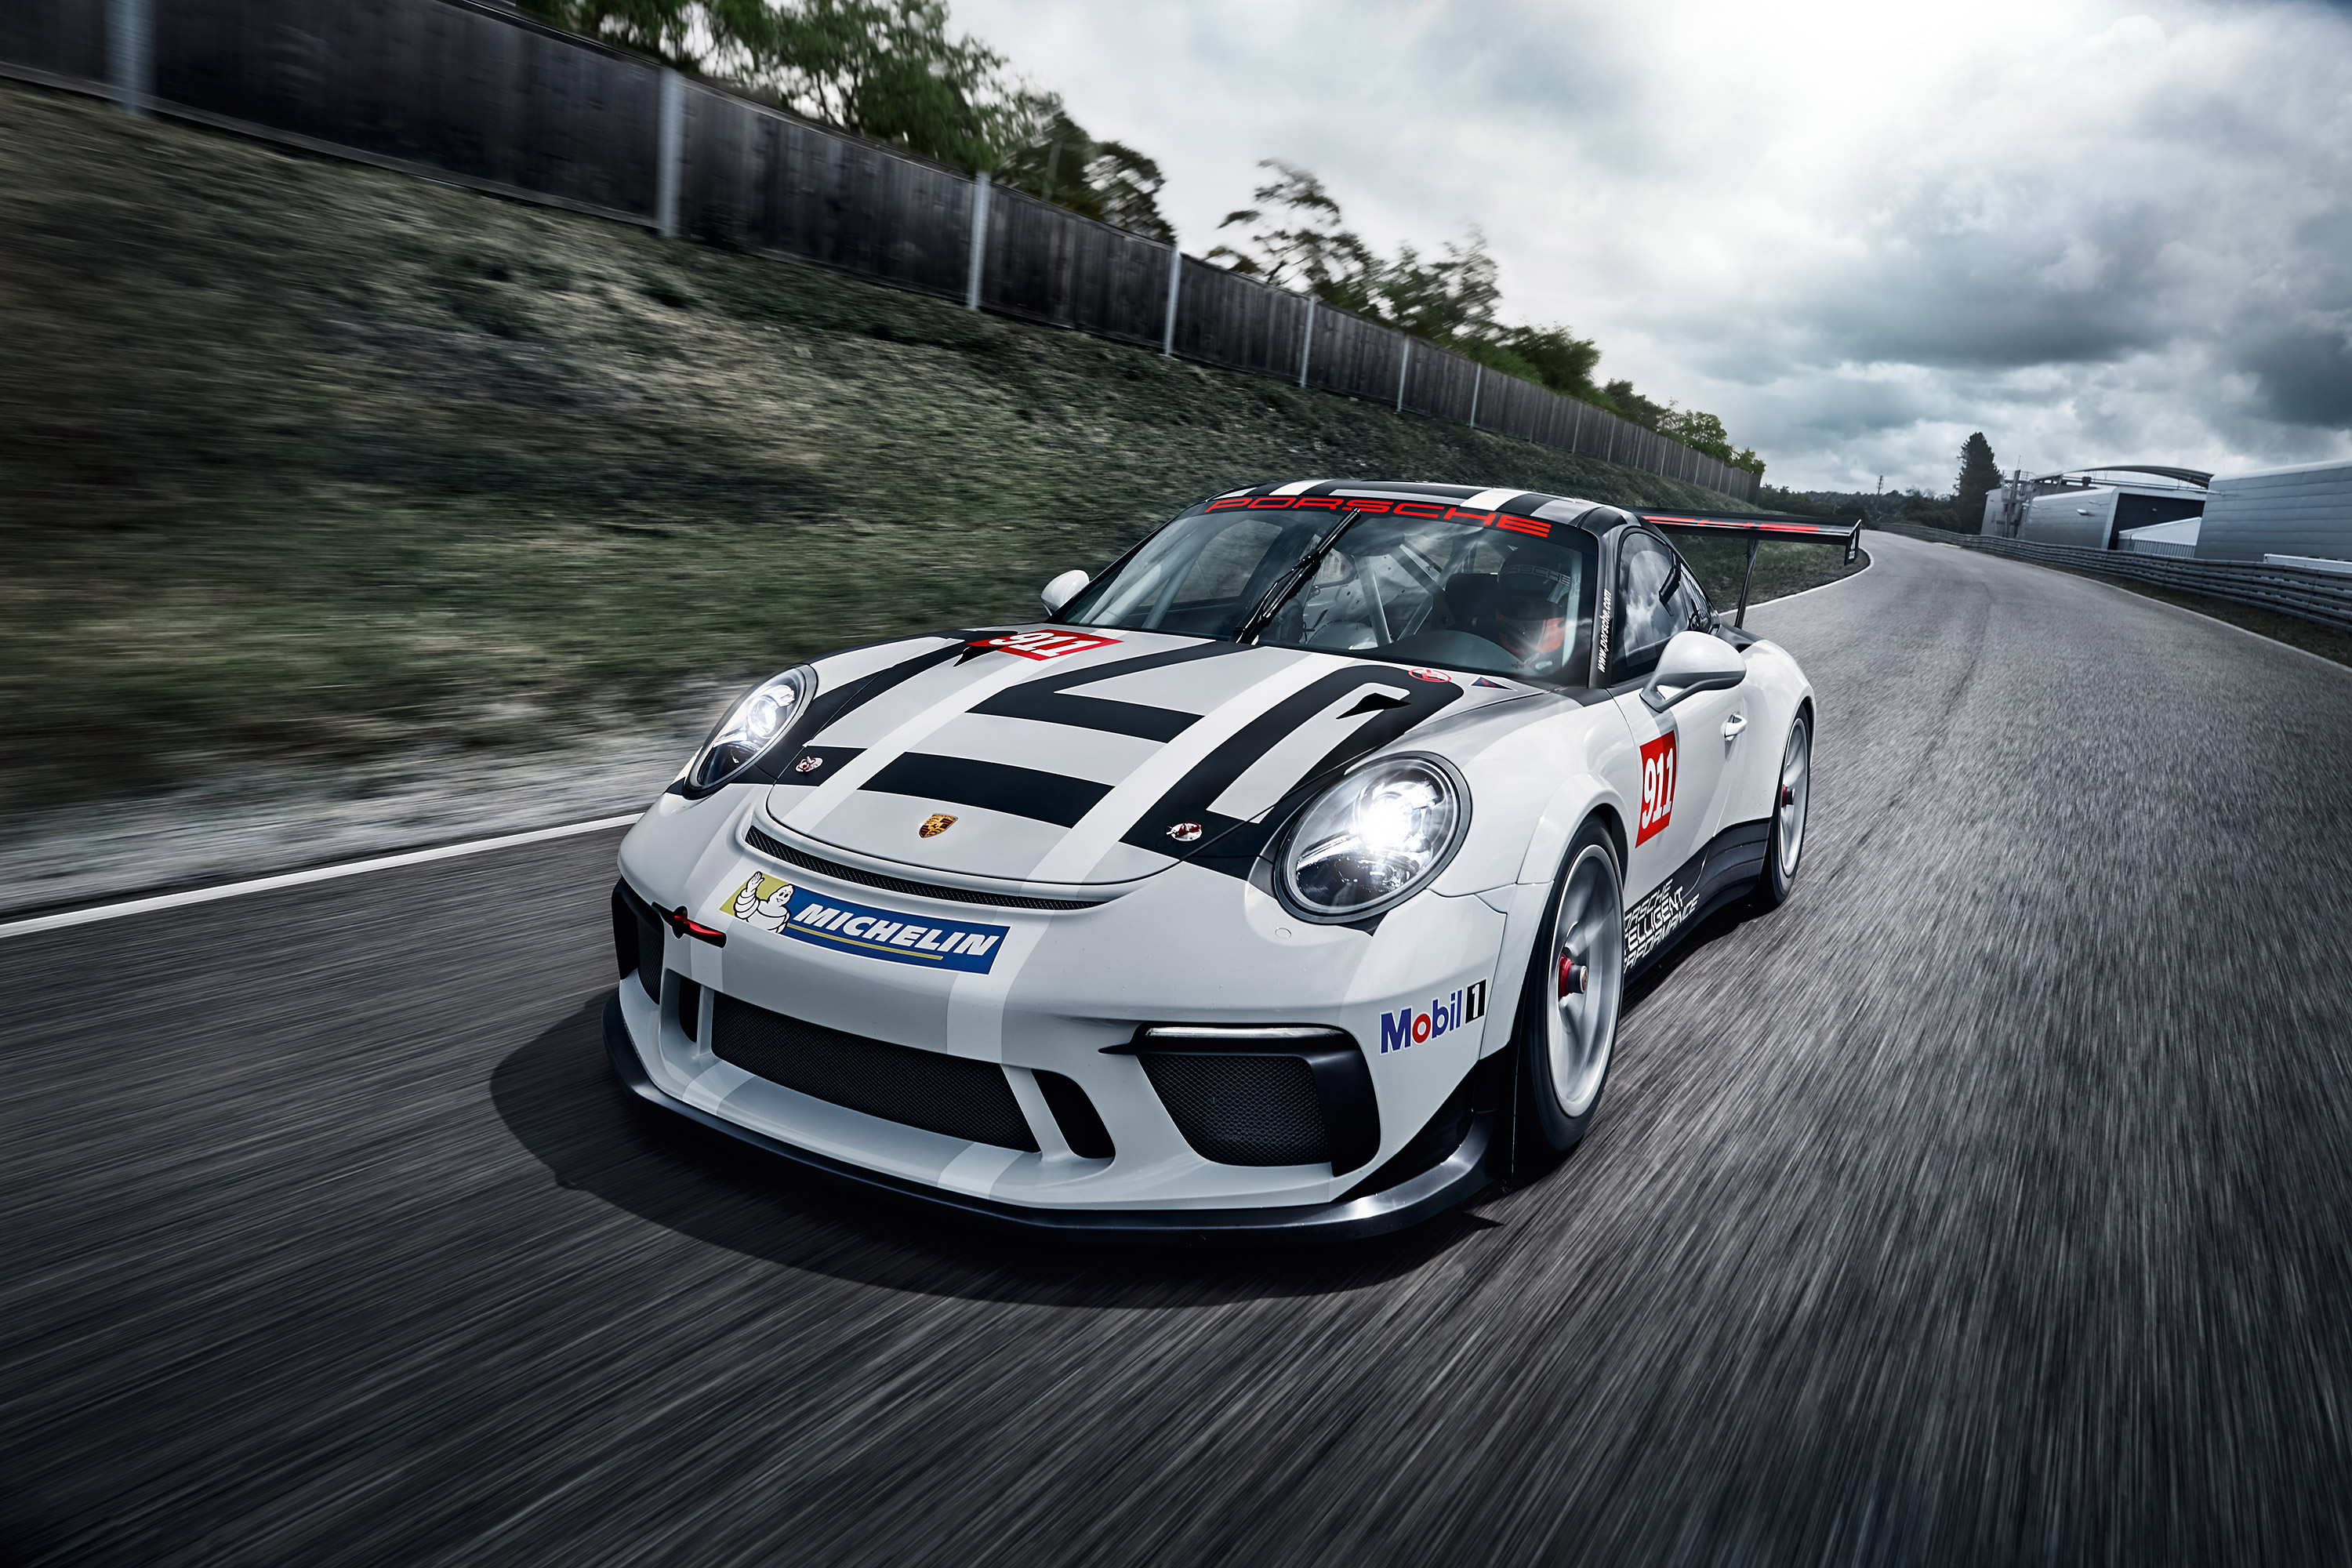 Скачать обои Кубок Porsche 911 Gt3 на телефон бесплатно